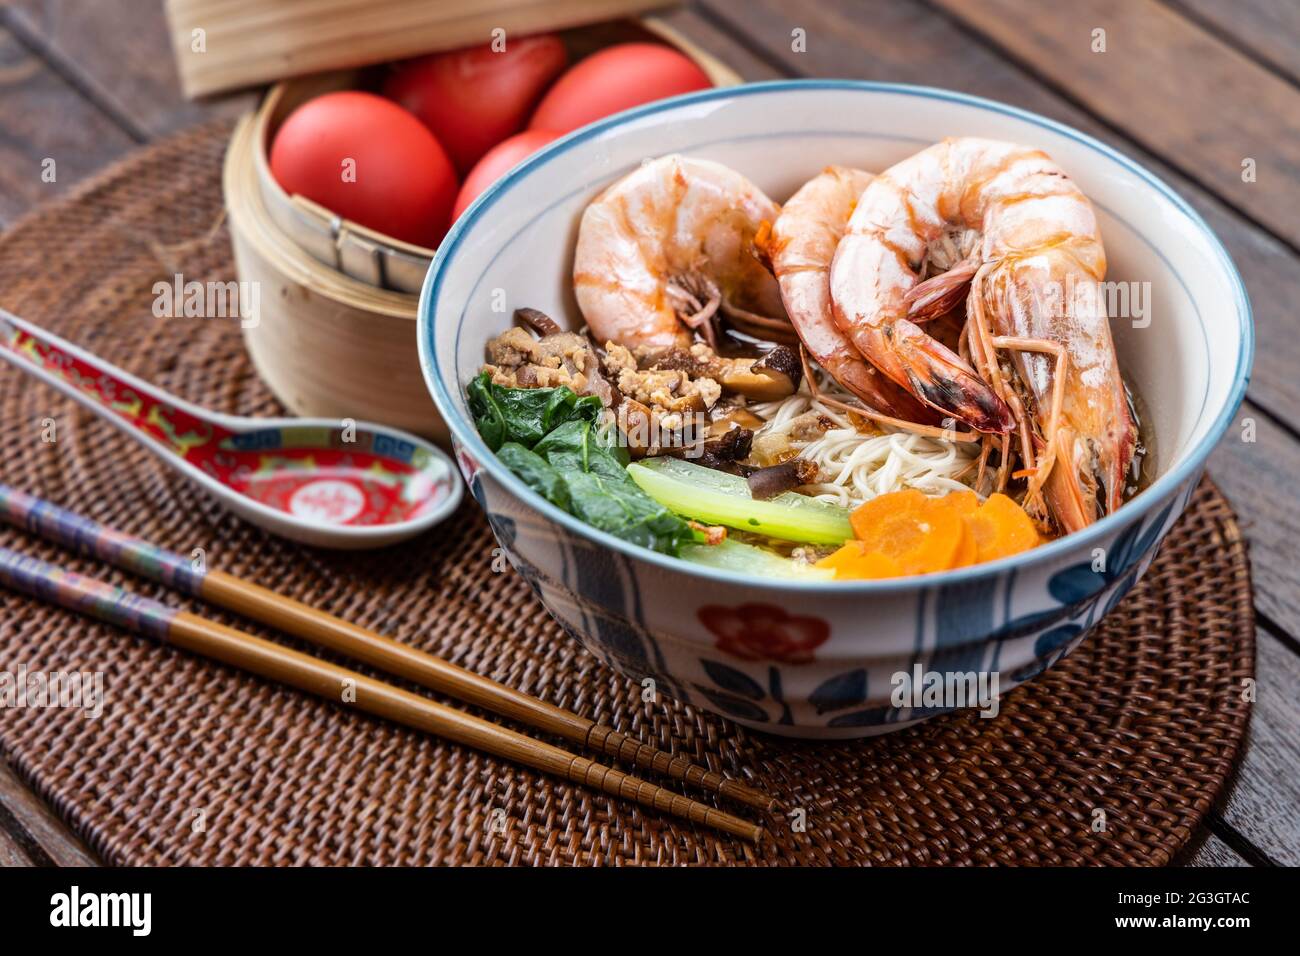 Serve noodle di compleanno con uova rosse, una tradizione tra i cinesi durante le celebrazioni di compleanno Foto Stock